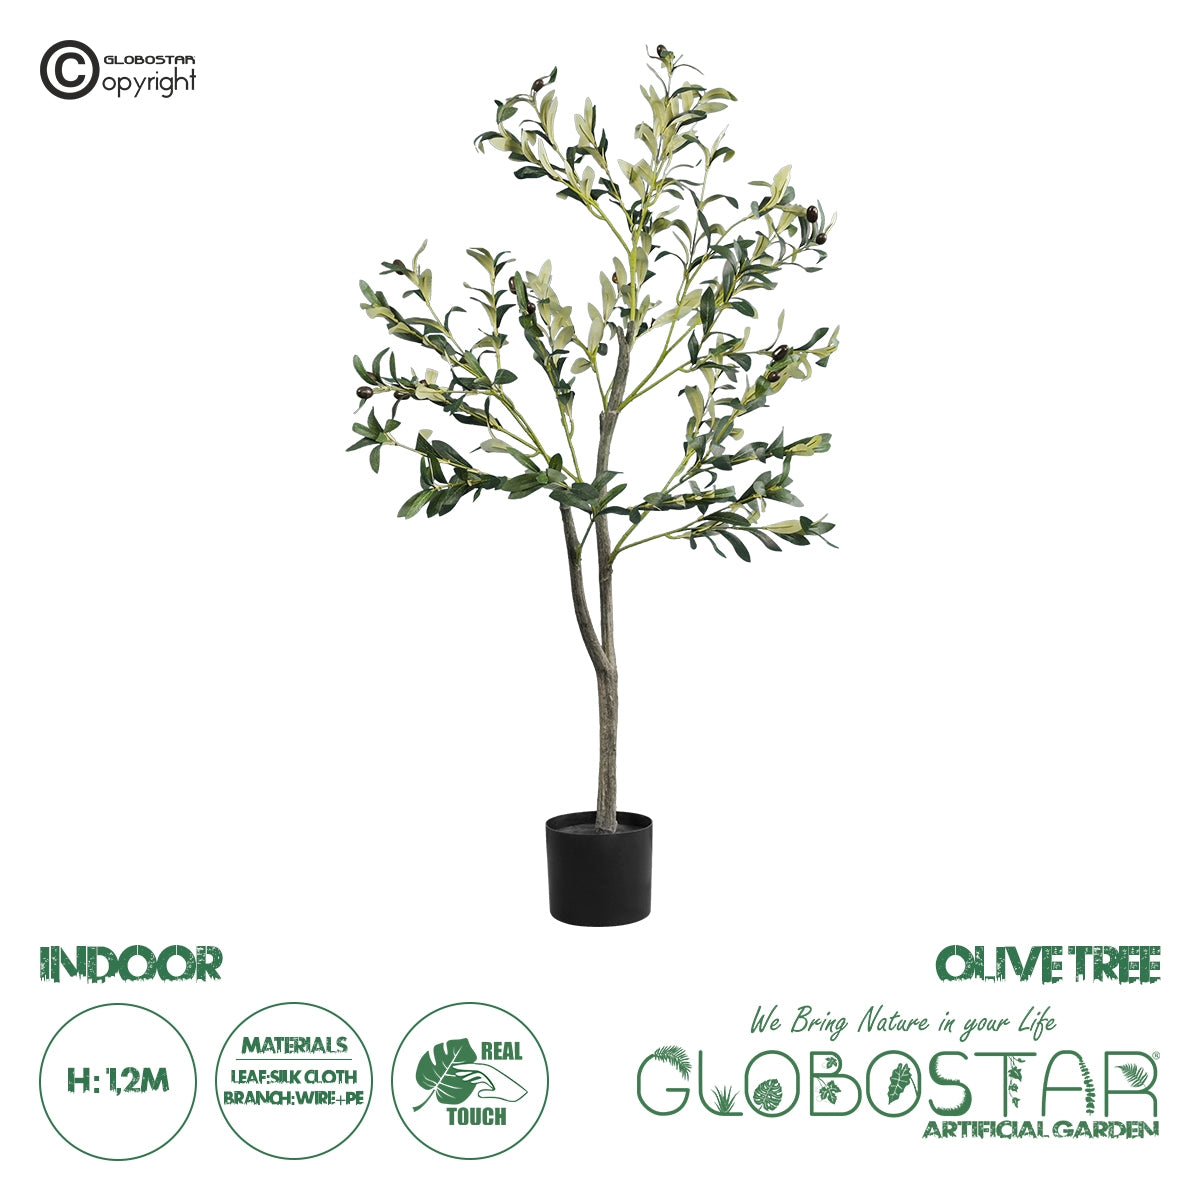 GloboStar® Artificial Garden OLIVE TREE 20053 Τεχνητό Διακοσμητικό Φυτό Ελιά Υ120cm